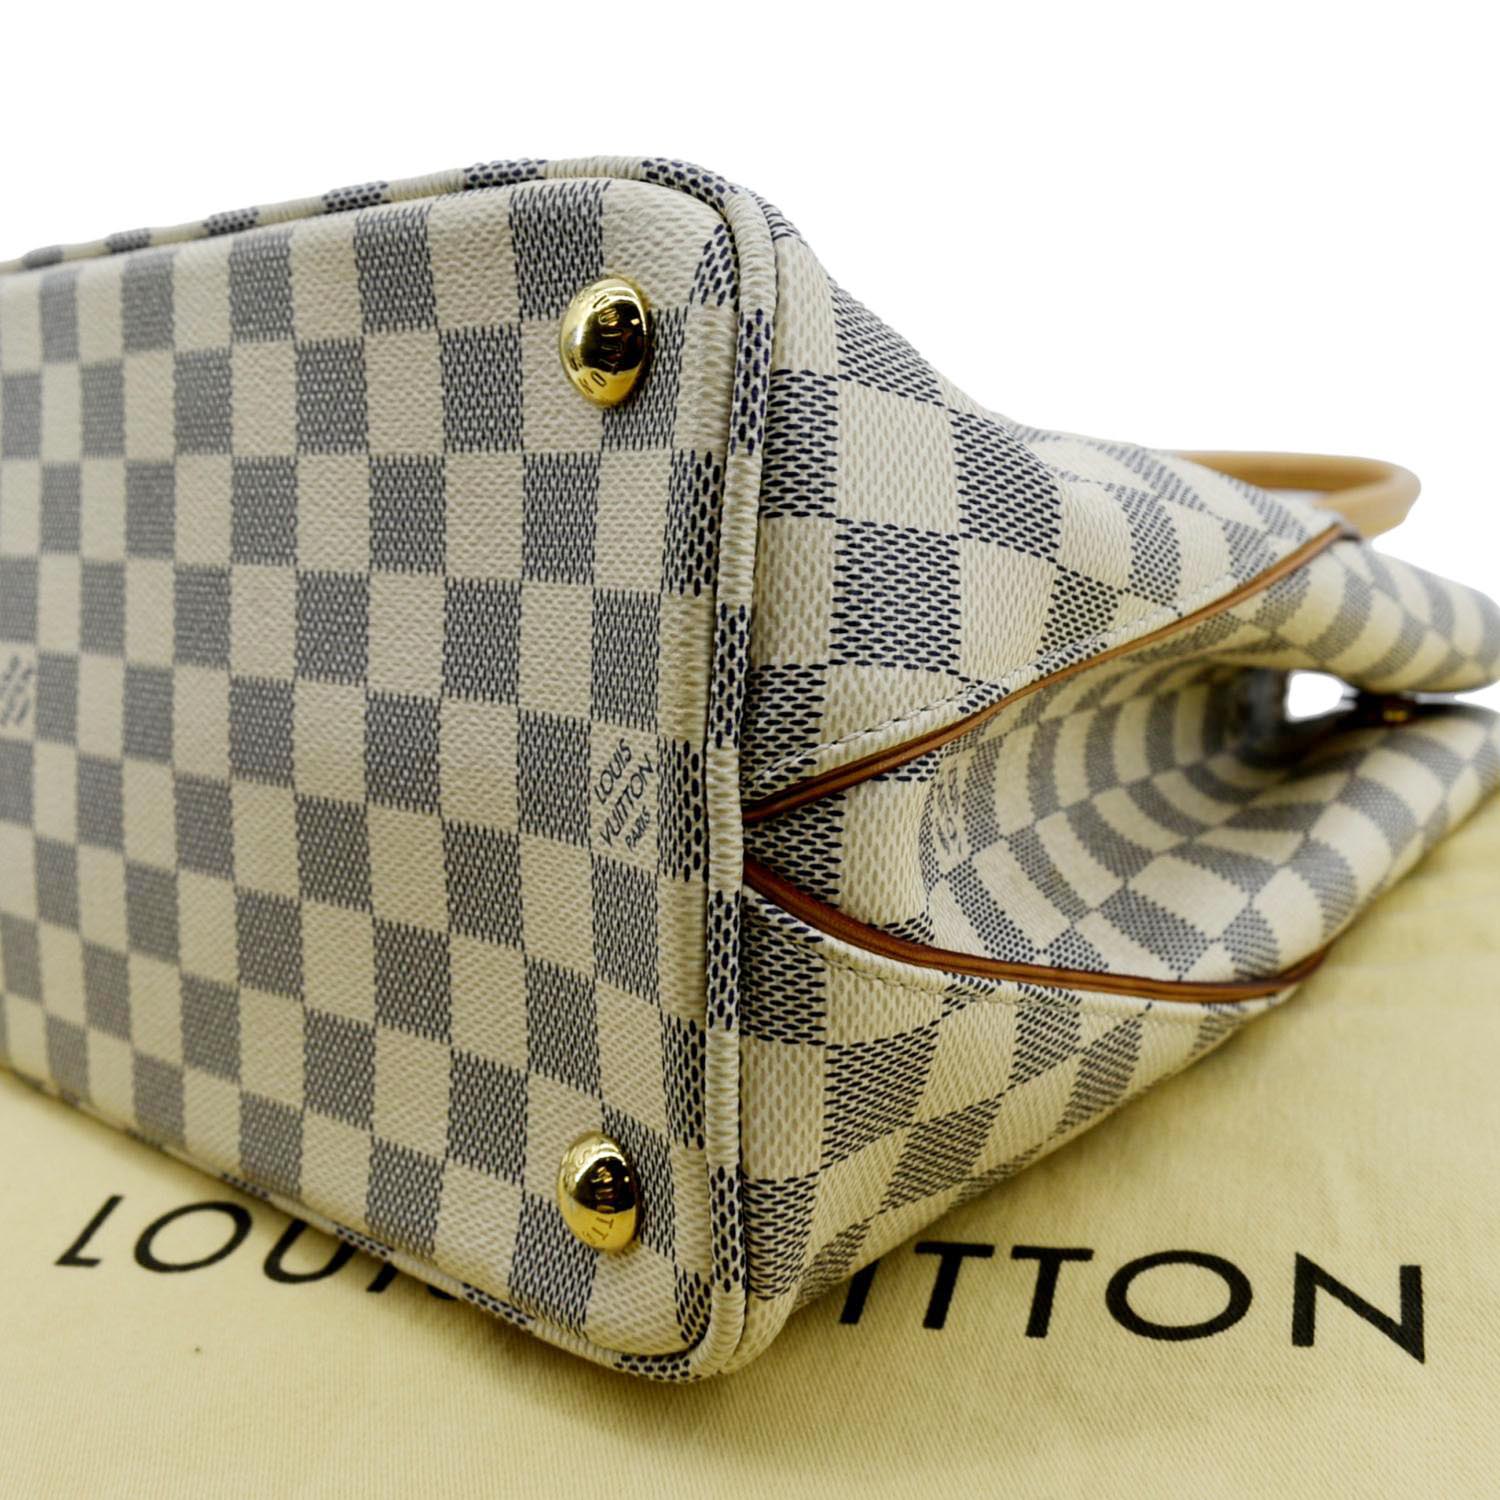 Louis Vuitton Calvi Handbag